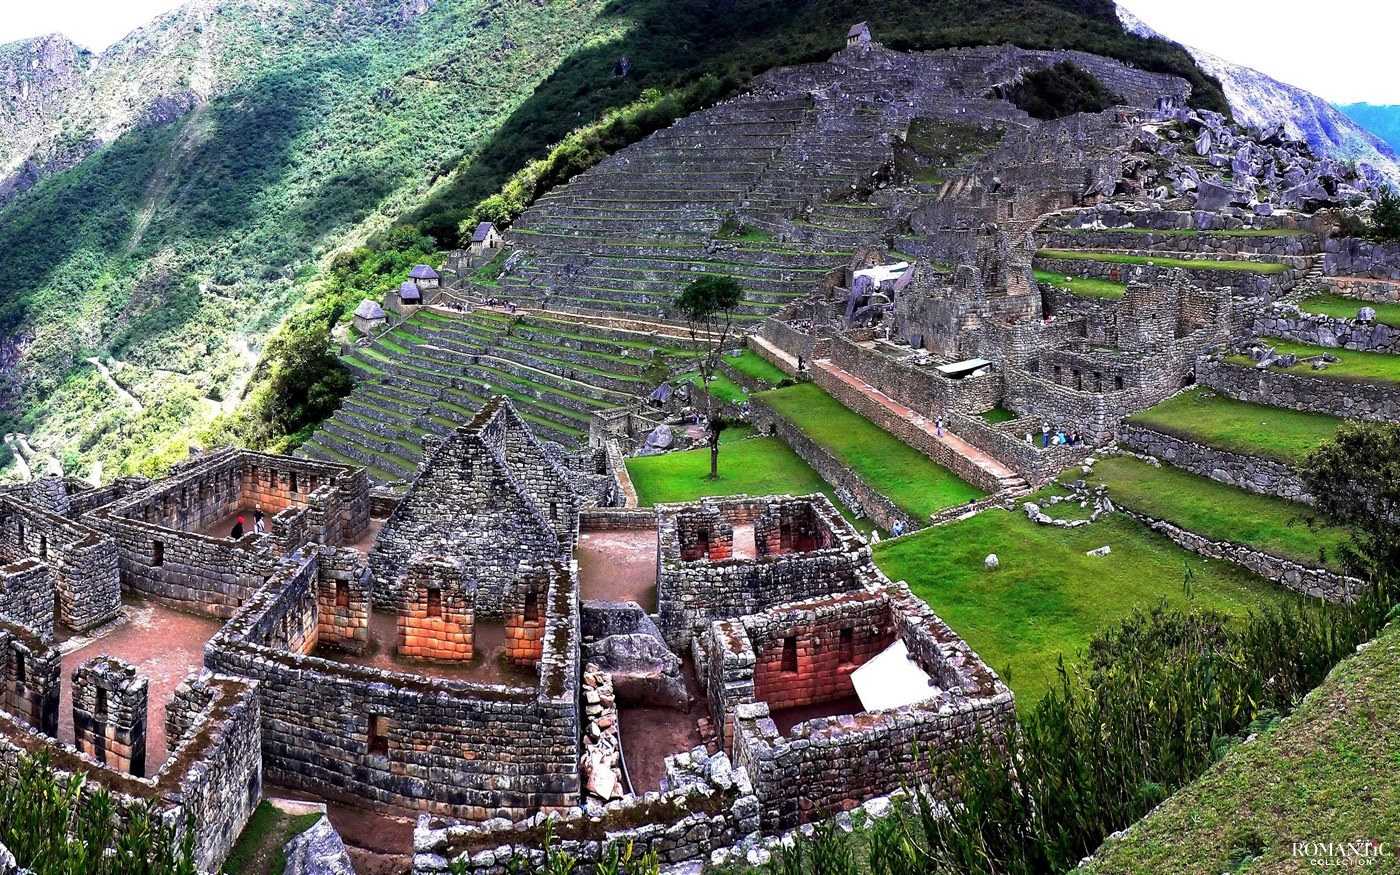 Архитектура инков - самая значительная доколумбовая архитектура в Южной Америке Инки унаследовали архитектурное наследие от Тиванаку, основанного во втором веке до нашей эры в современной Боливии Основной характеристикой архитектурного стиля было использо